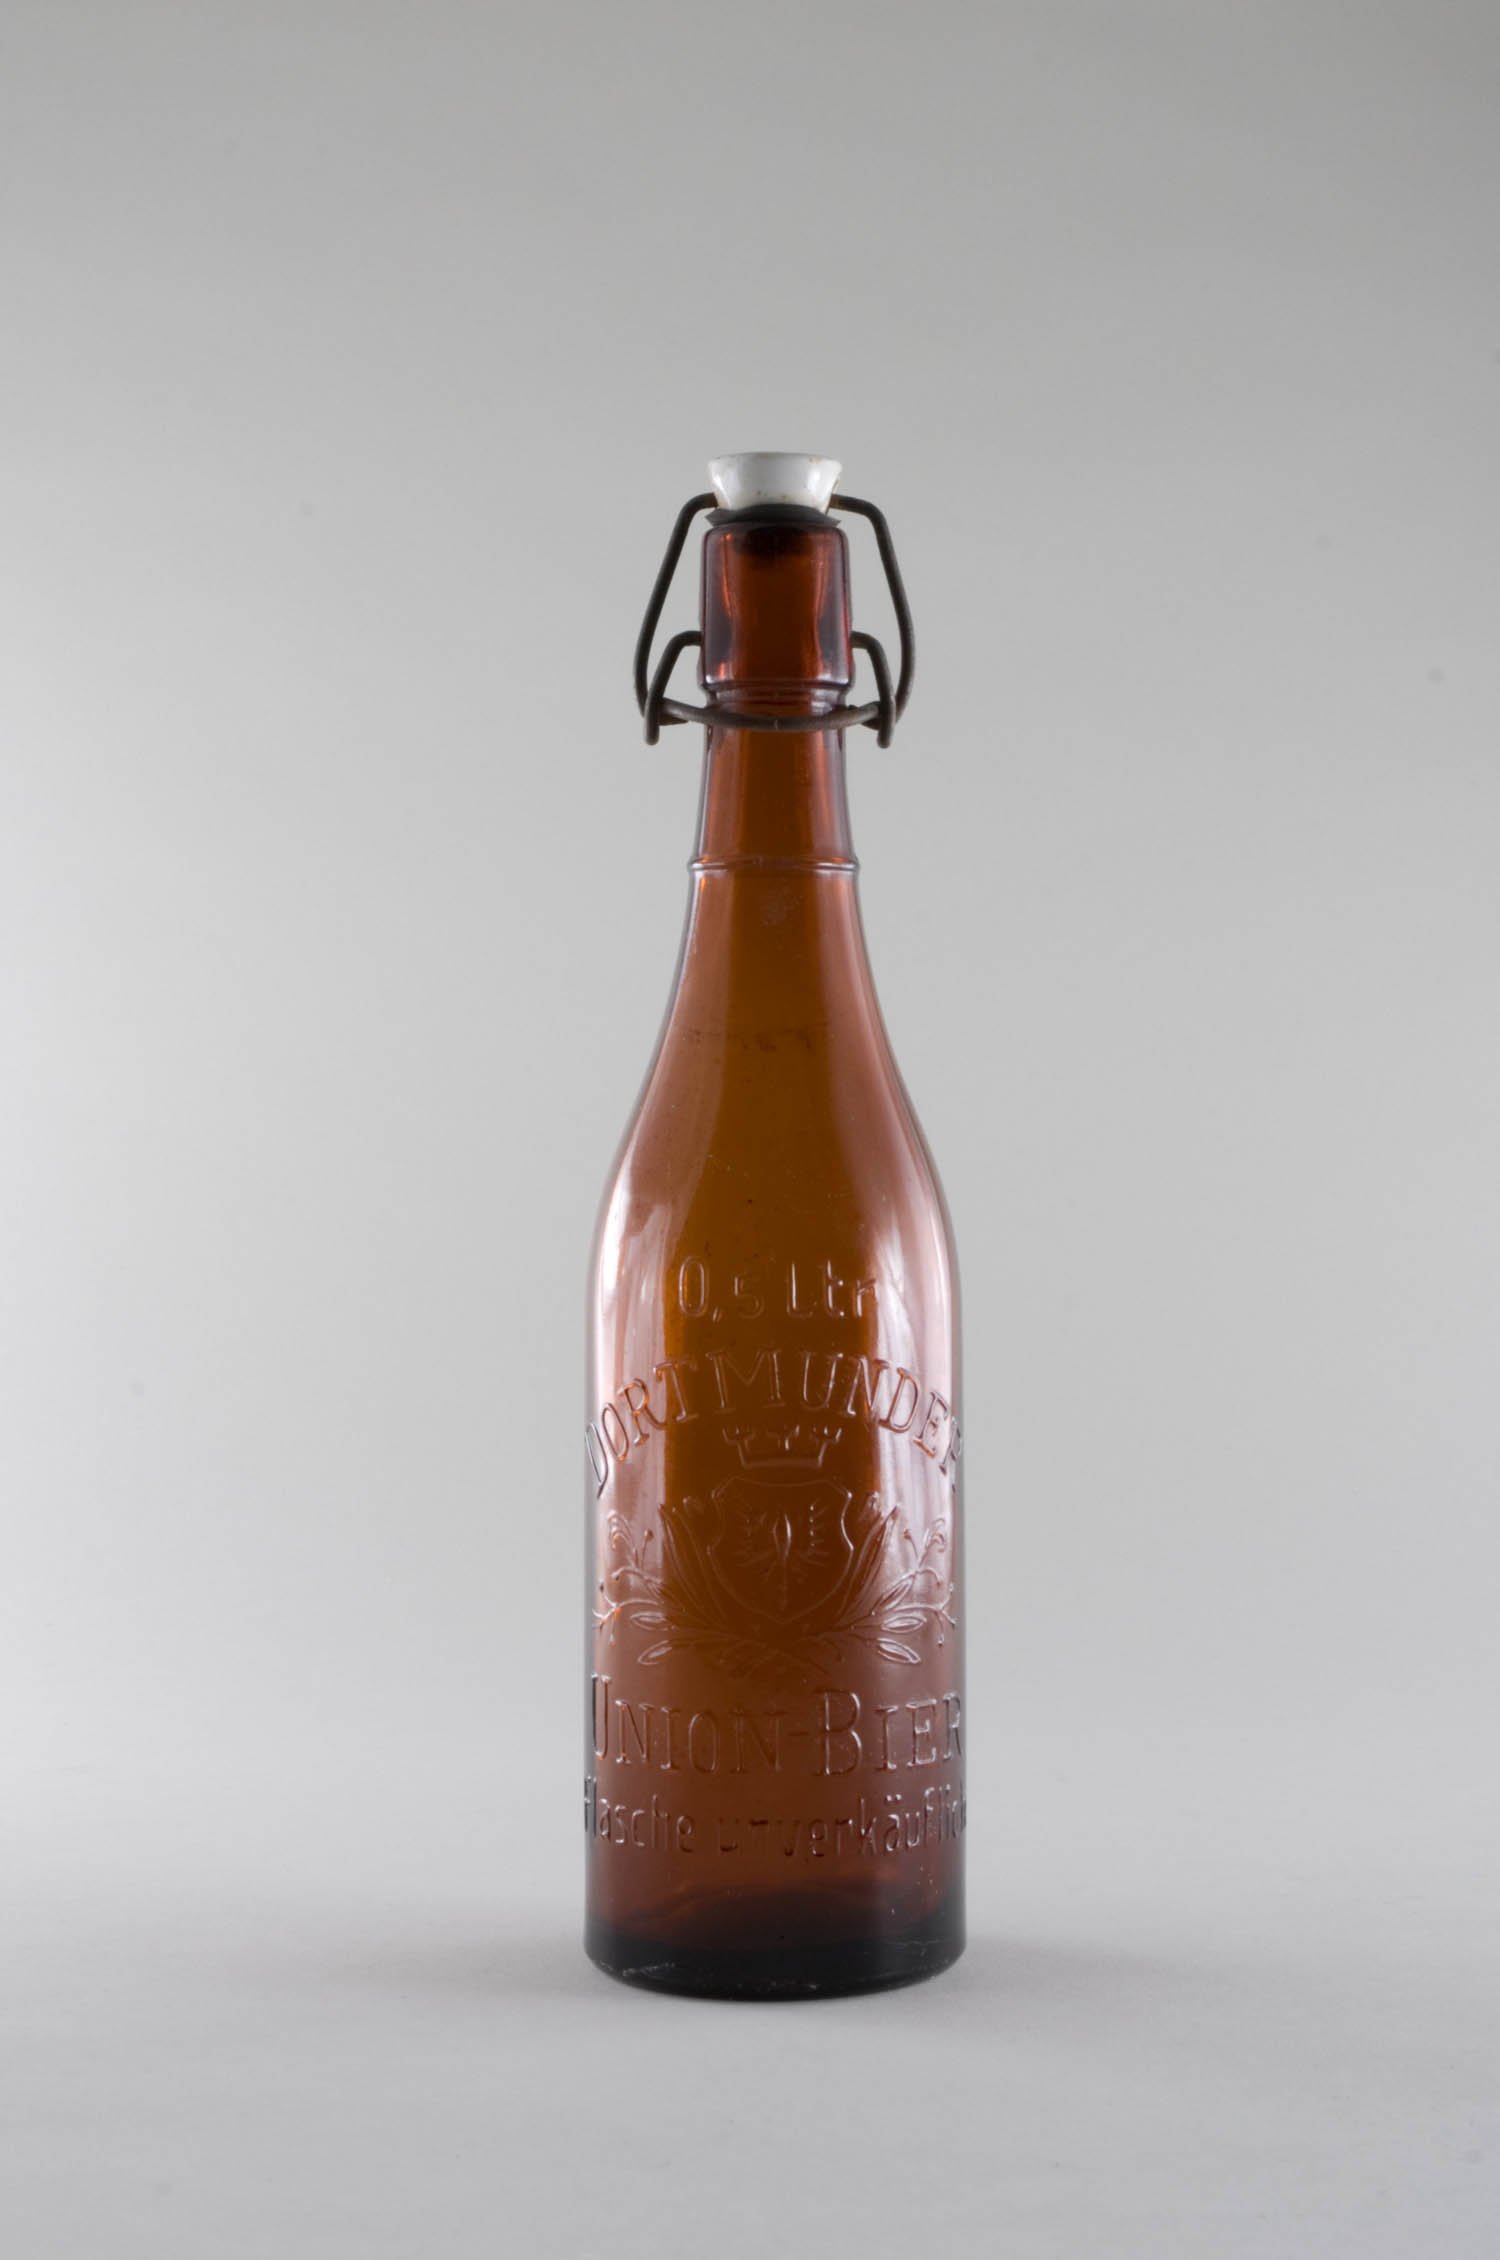 Bierflasche "Dortmunder Union", mit Bügelverschluss (Stiftung Domäne Dahlem - Landgut und Museum, Weiternutzung nur mit Genehmigung des Museums CC BY-NC-SA)